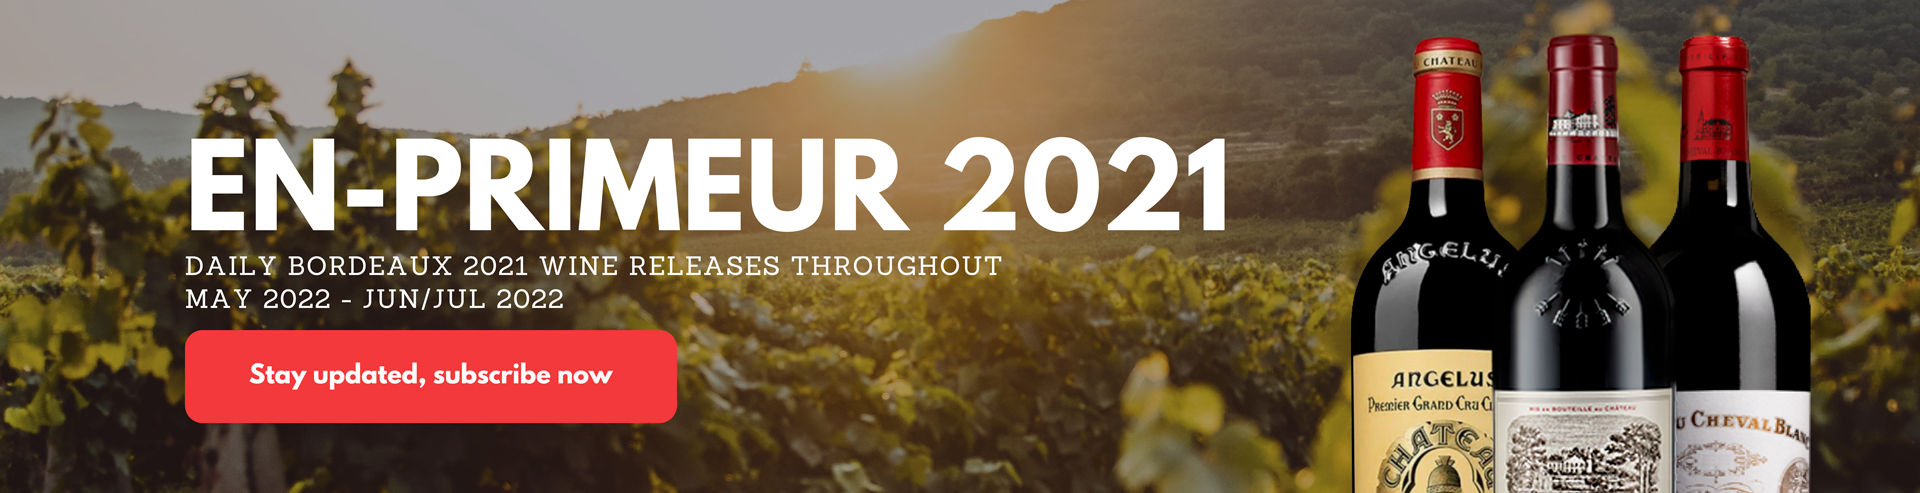 Bordeaux En Primeur 2021: First Thoughts